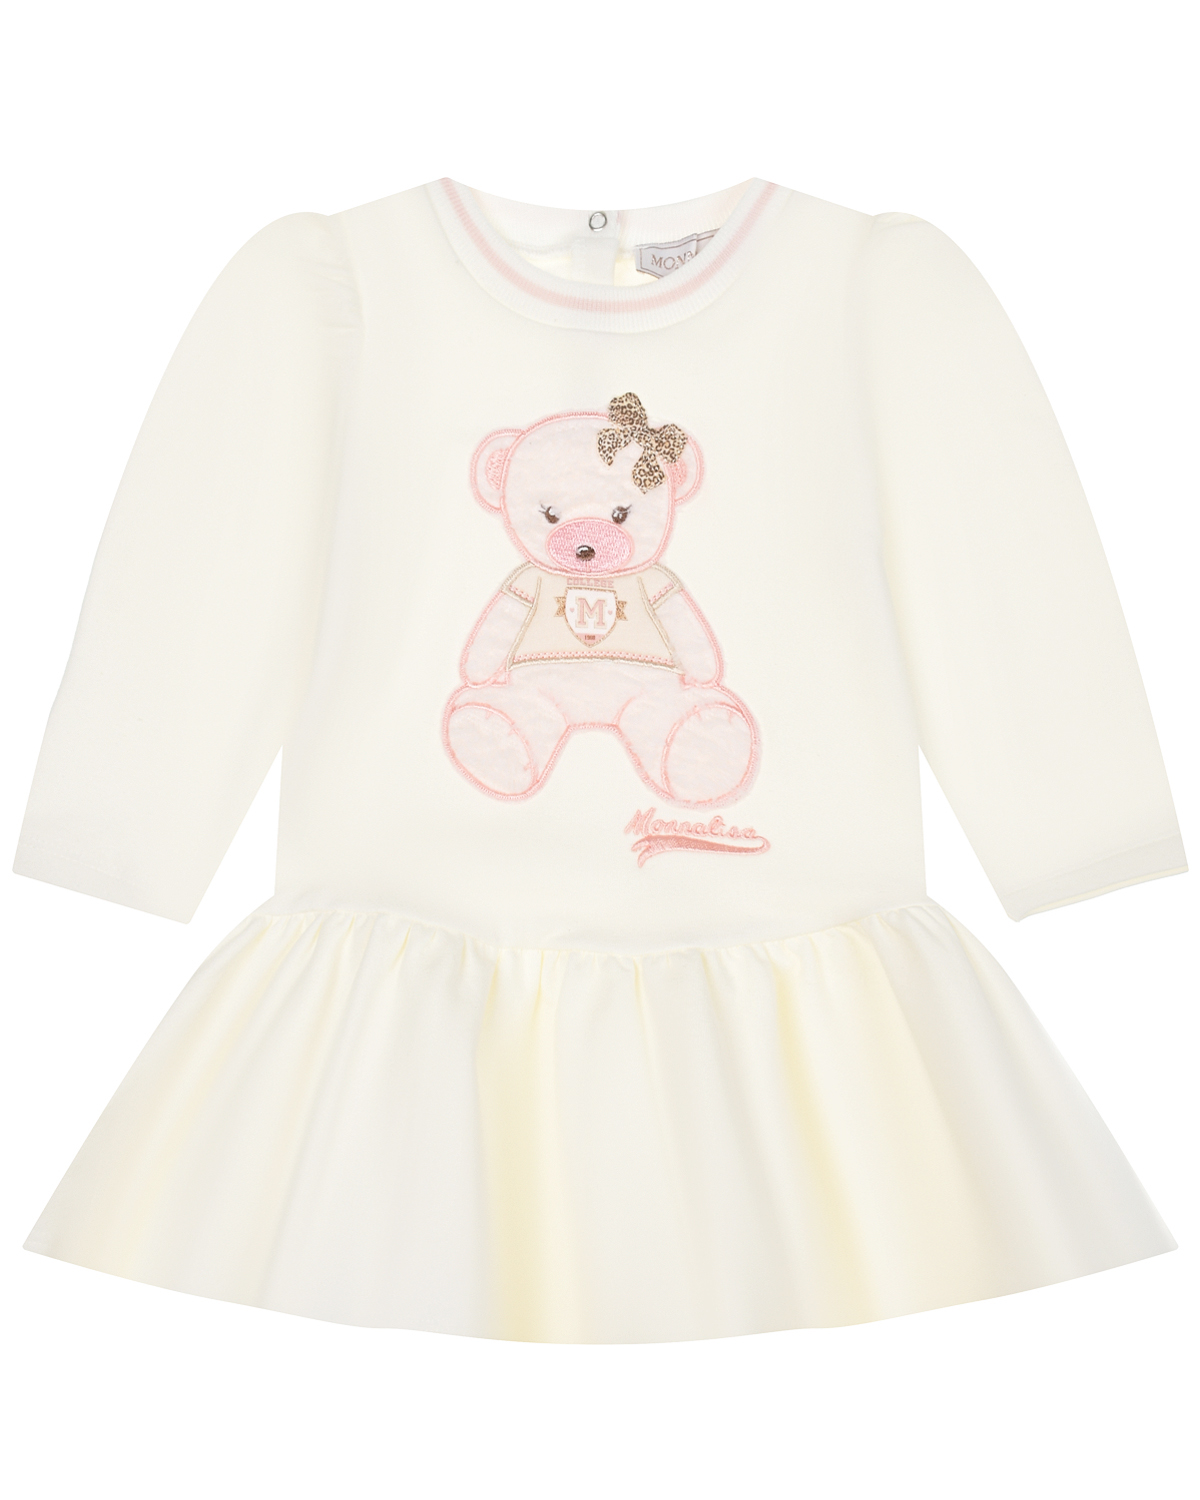 Платье с принтом "медвежонок" Monnalisa детское, размер 80, цвет белый - фото 1